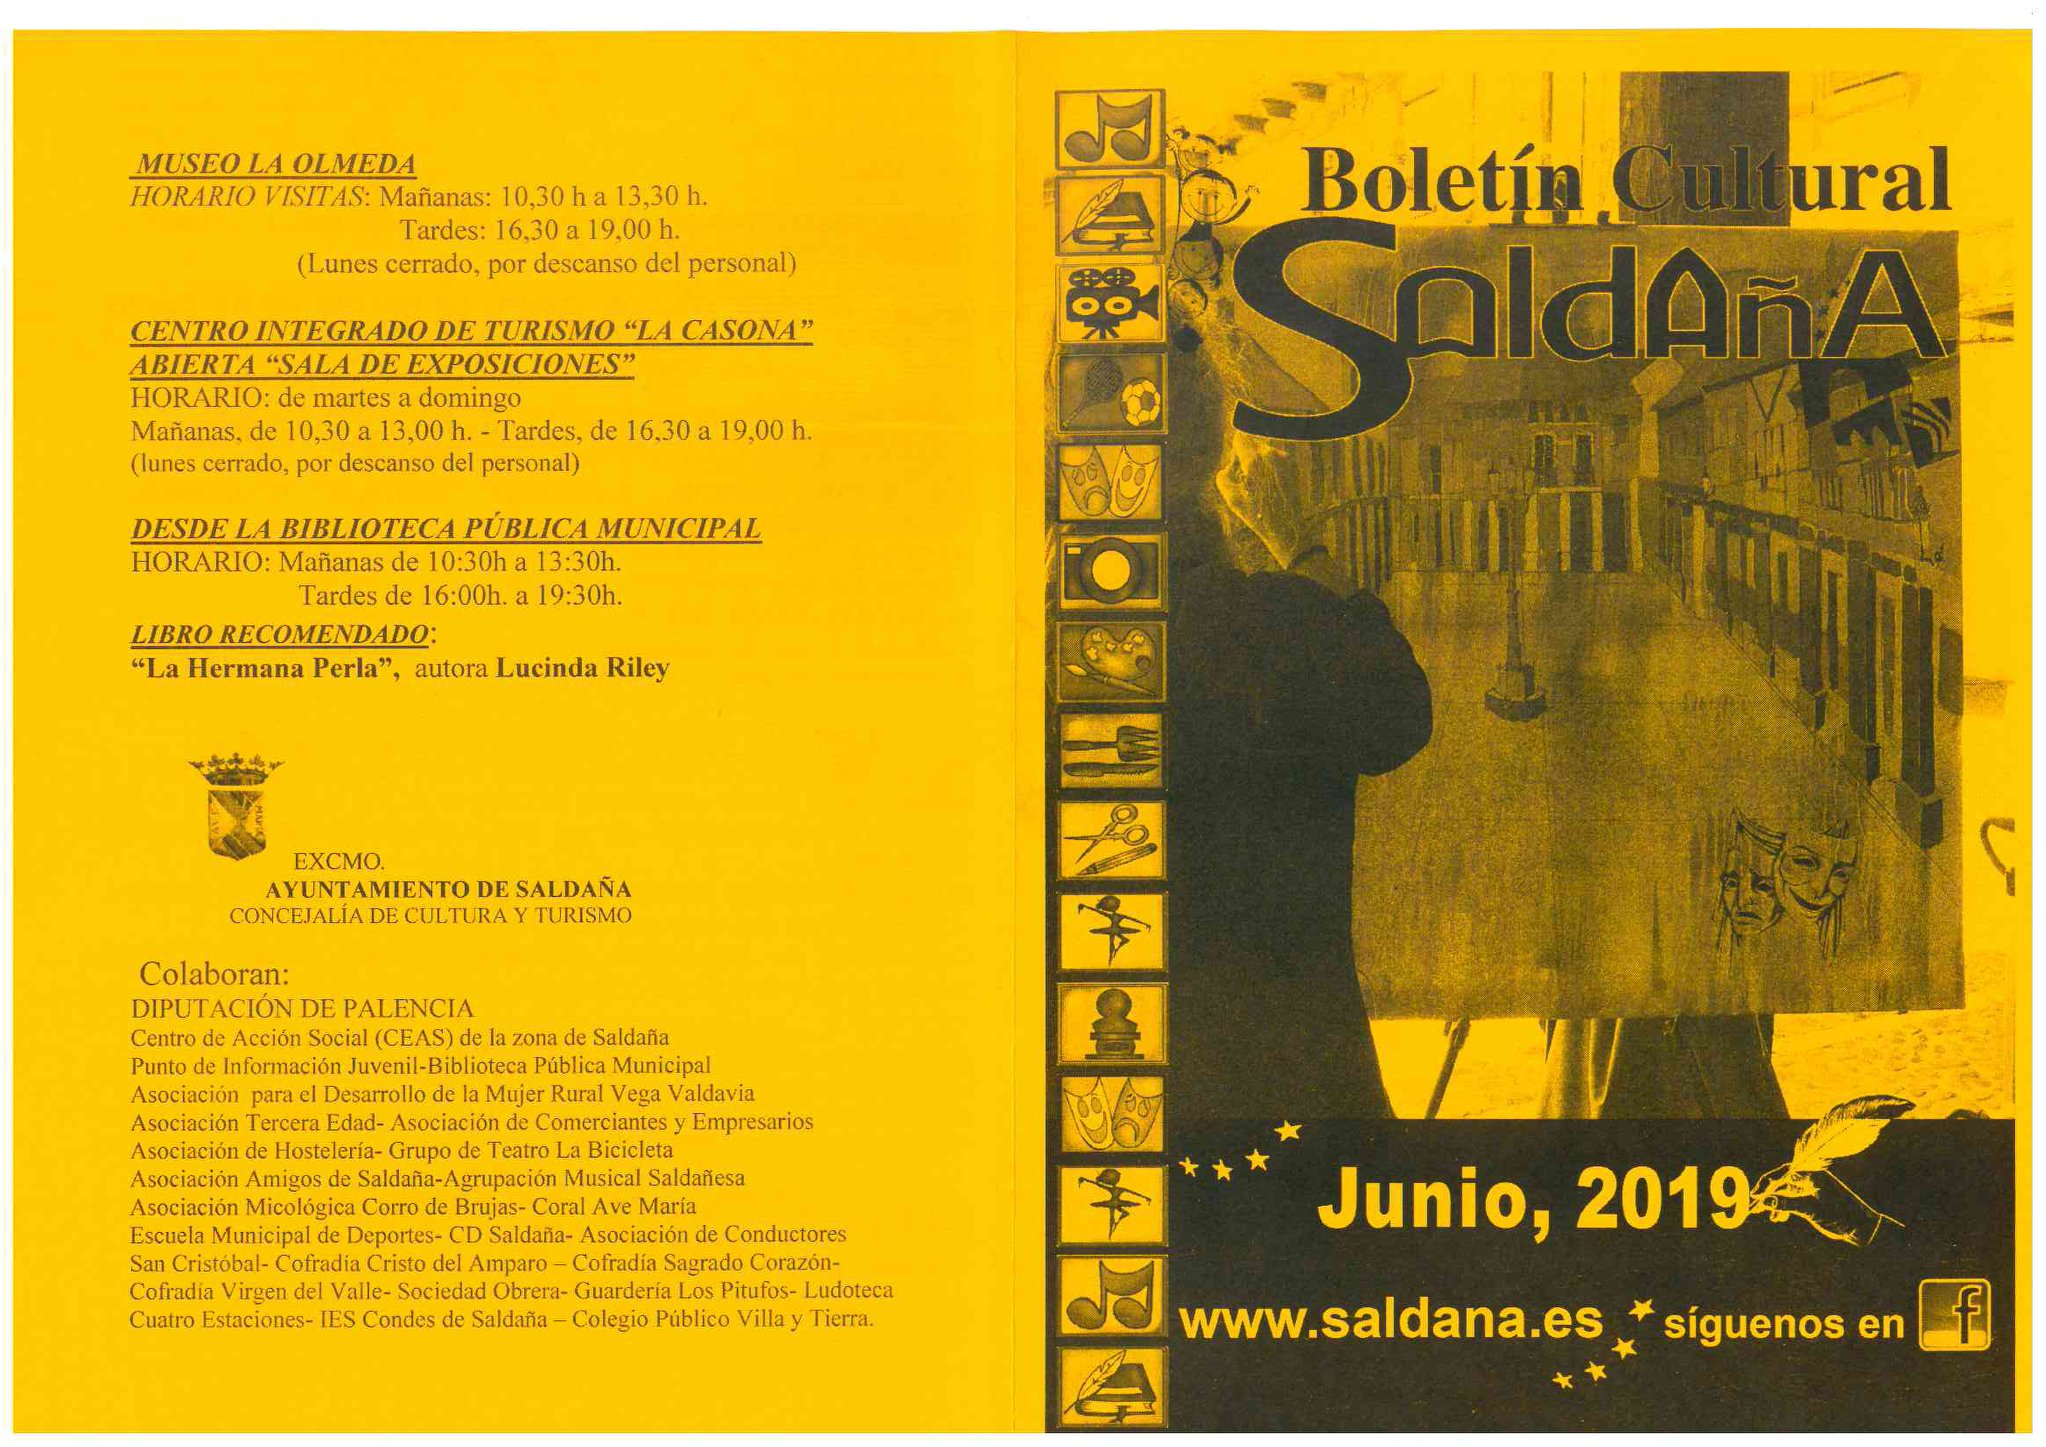 Boletín cultural junio 2019 - Saldaña (Palencia) 1